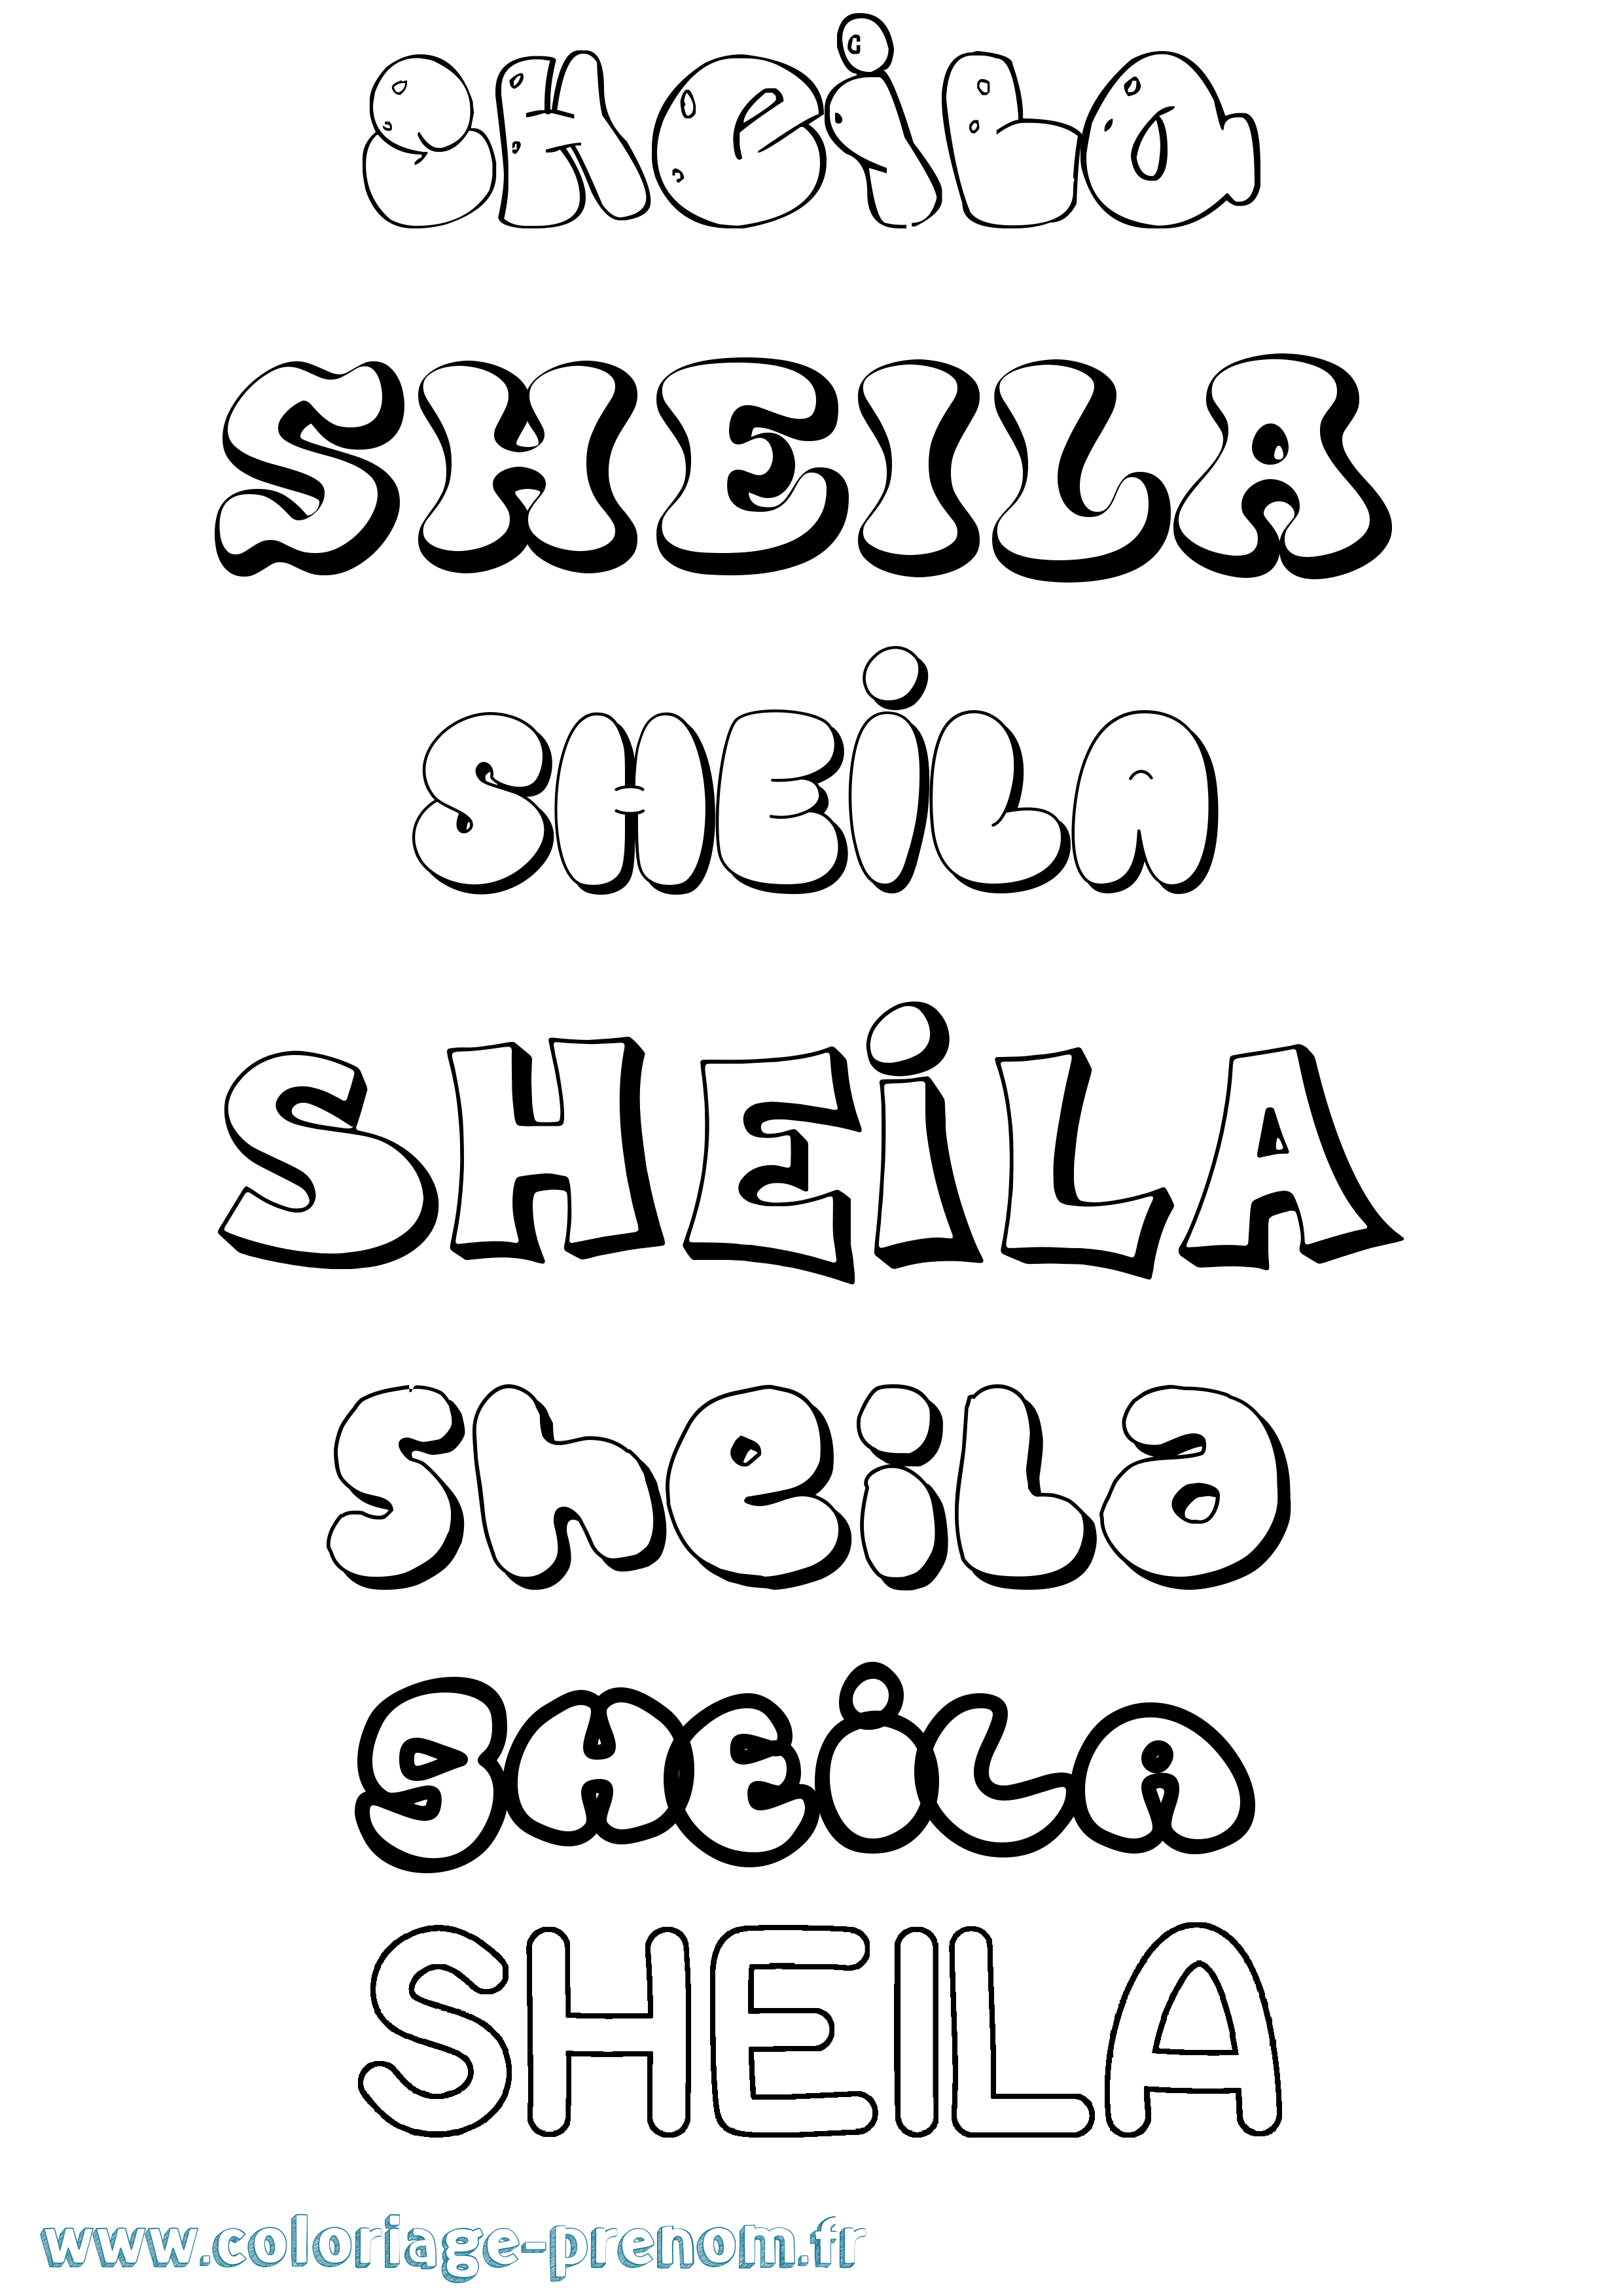 Coloriage prénom Sheila Bubble